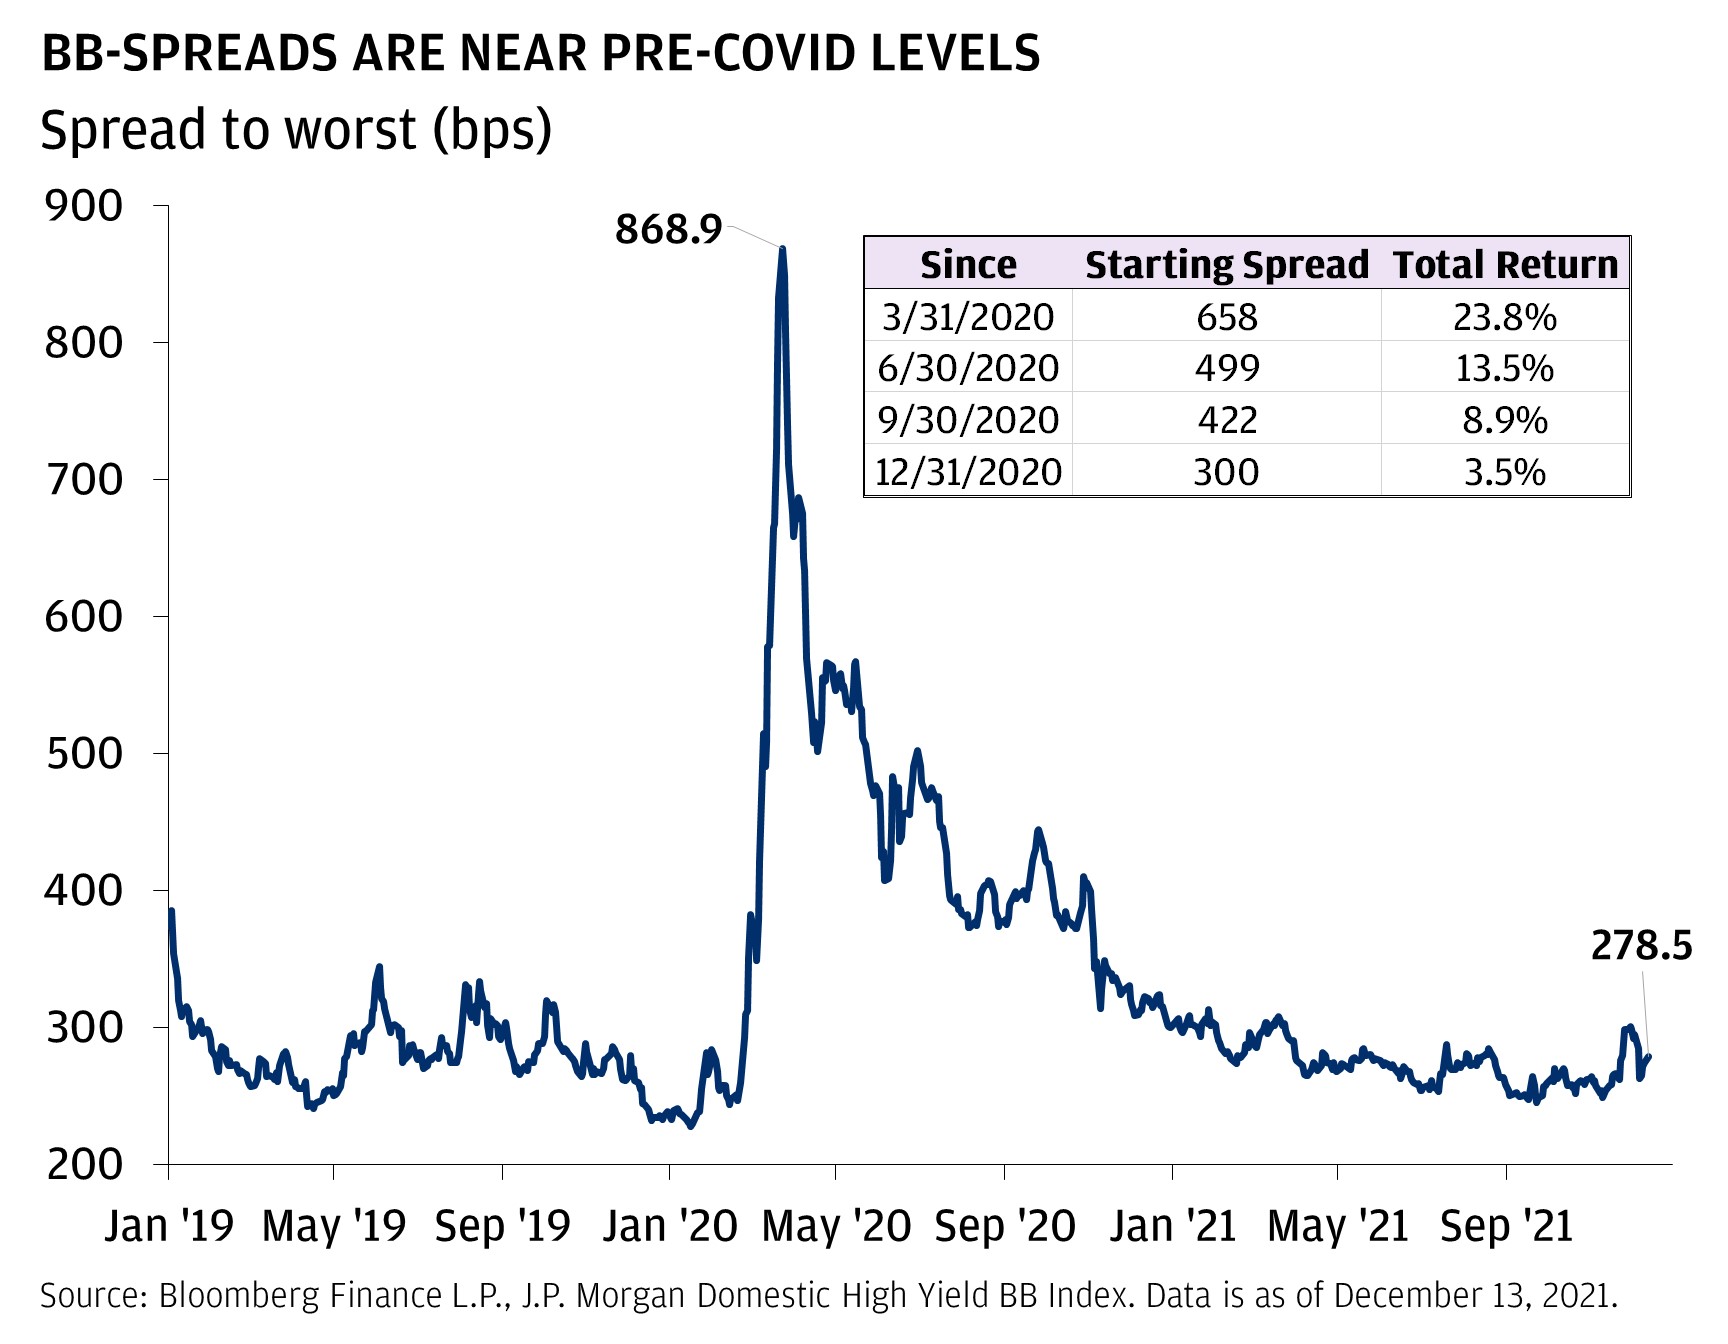 BB spreads are near pre-COVID-19 levels